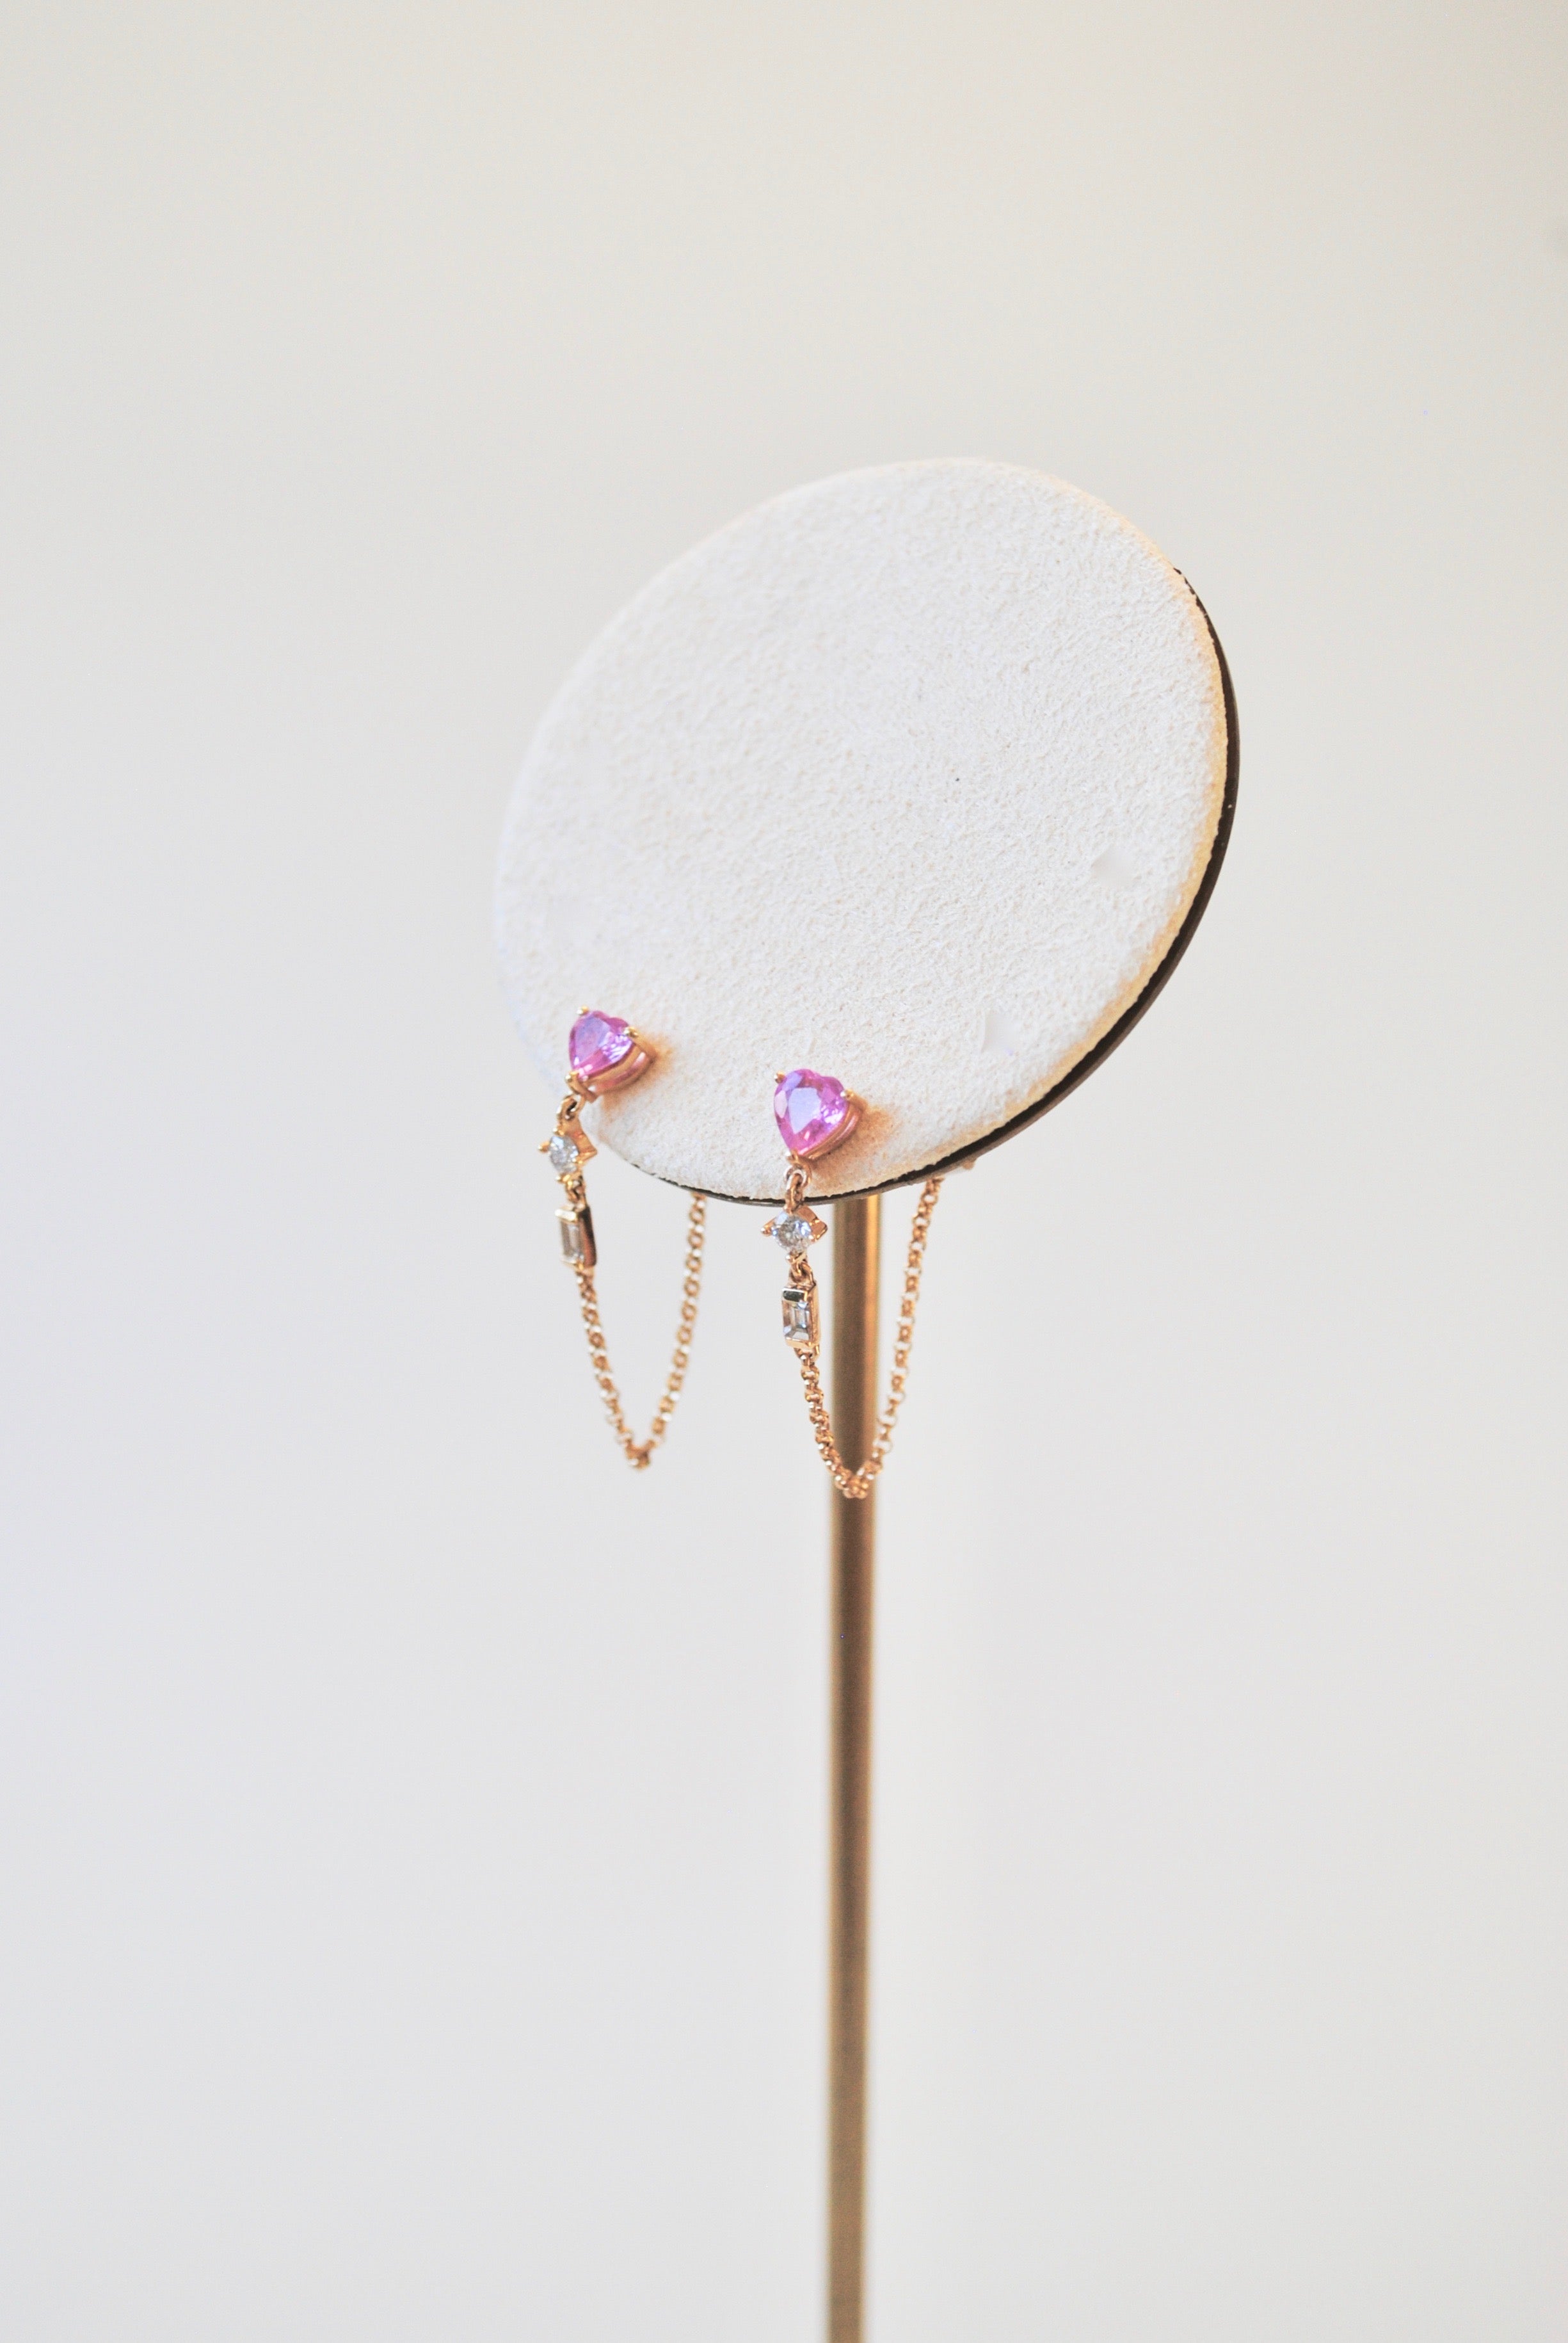 14K Diamond Chain Dangle Earrings w/ Pink Topaz Heart